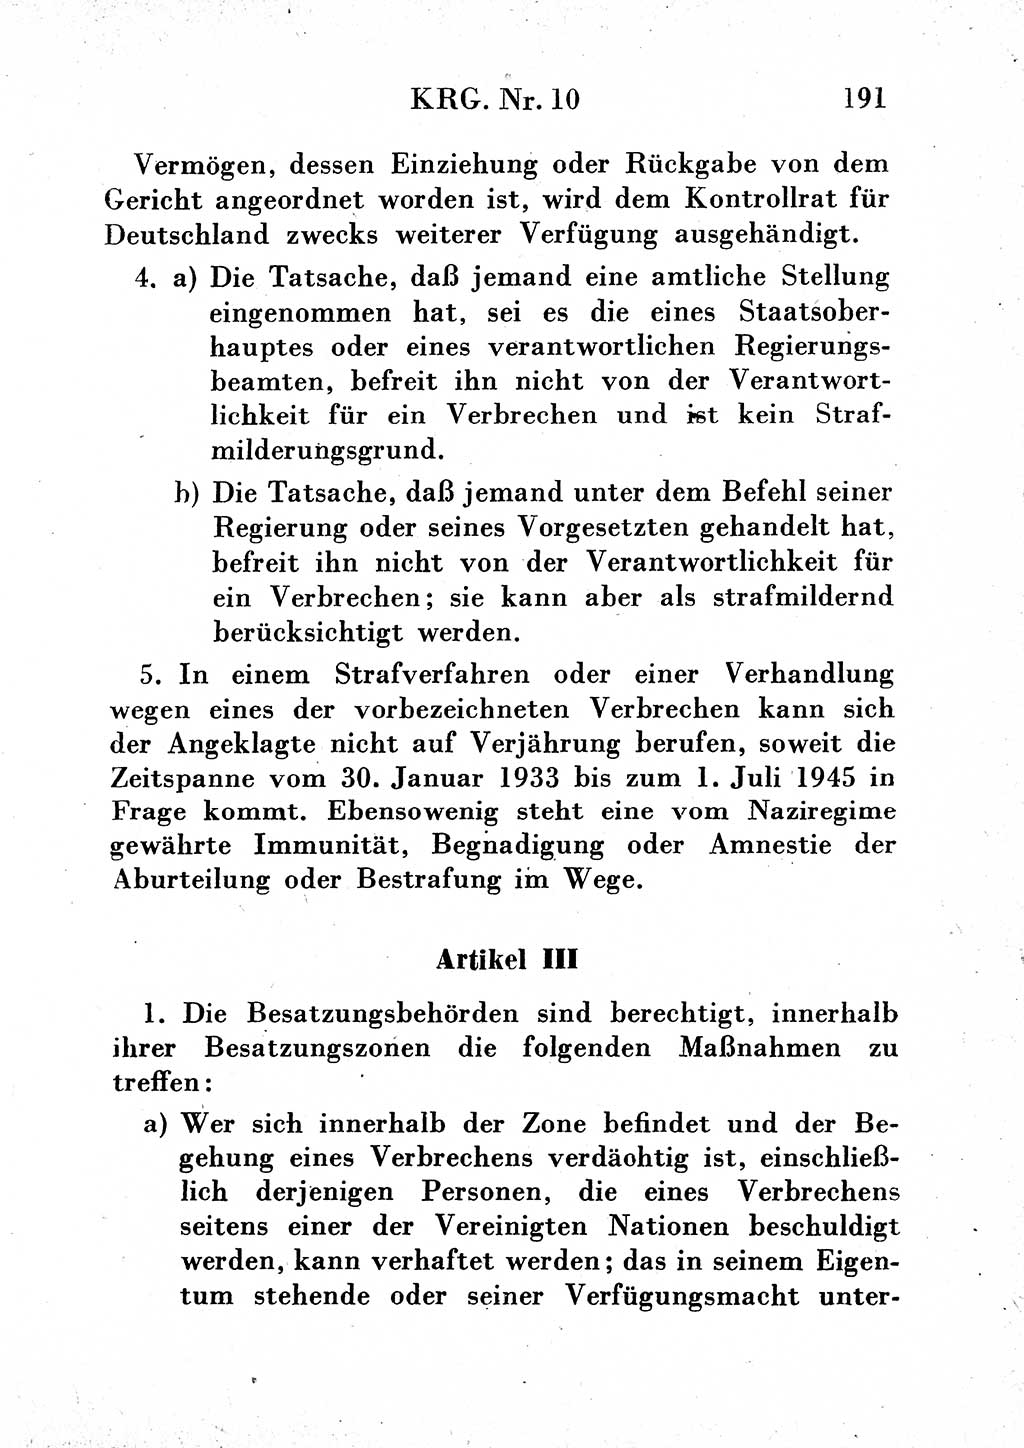 Strafgesetzbuch (StGB) und andere Strafgesetze [Deutsche Demokratische Republik (DDR)] 1954, Seite 191 (StGB Strafges. DDR 1954, S. 191)